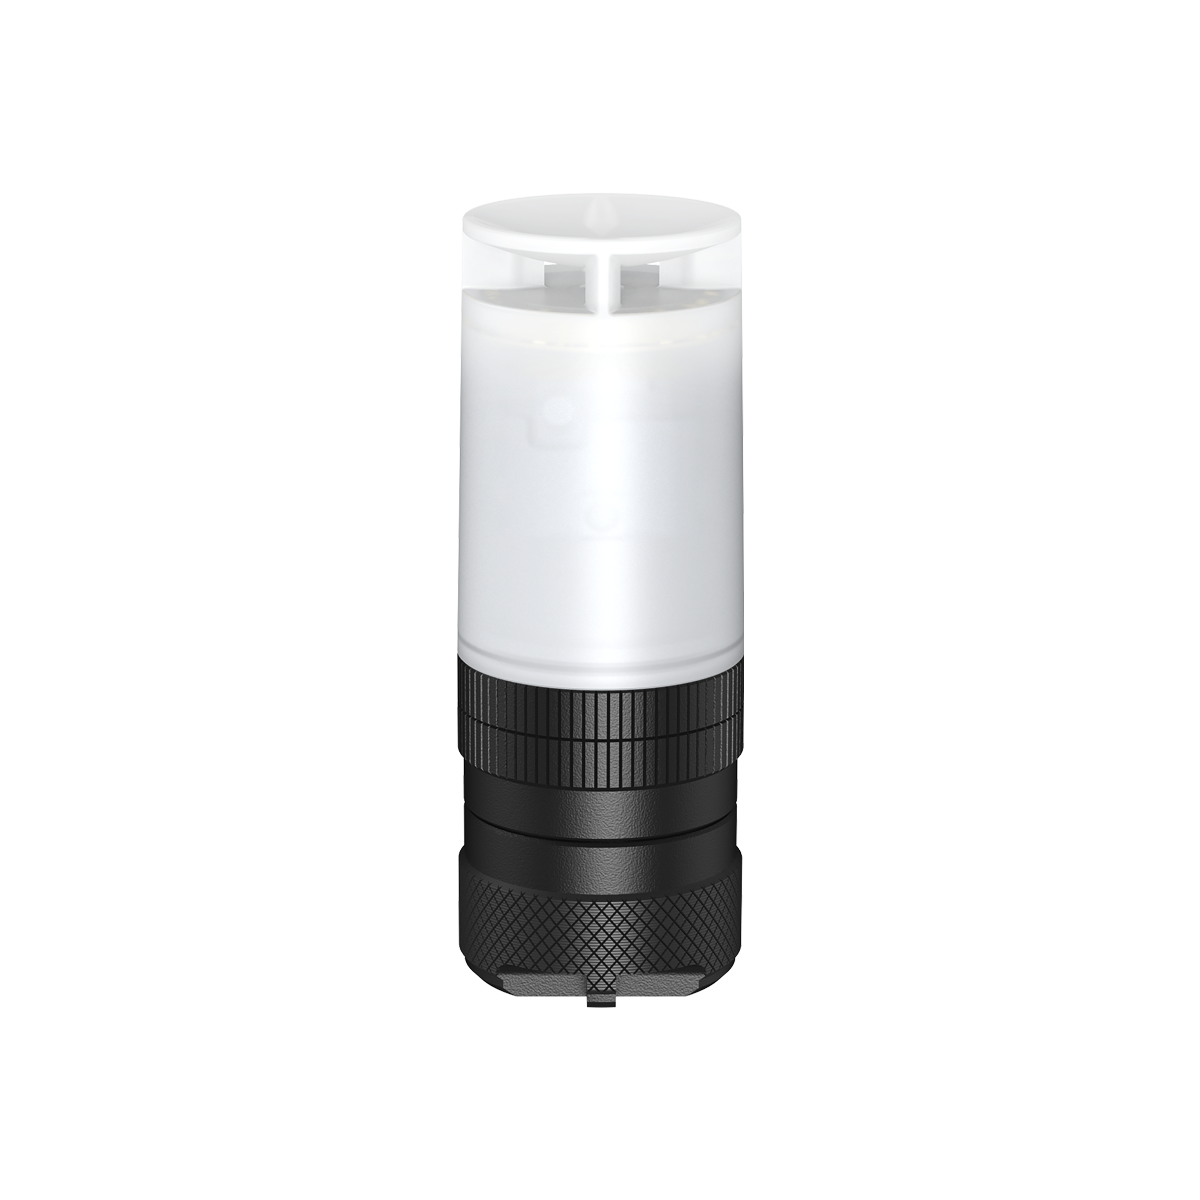 Nitecore NWE30 Emergency Electronic Whistle With Beacon Light